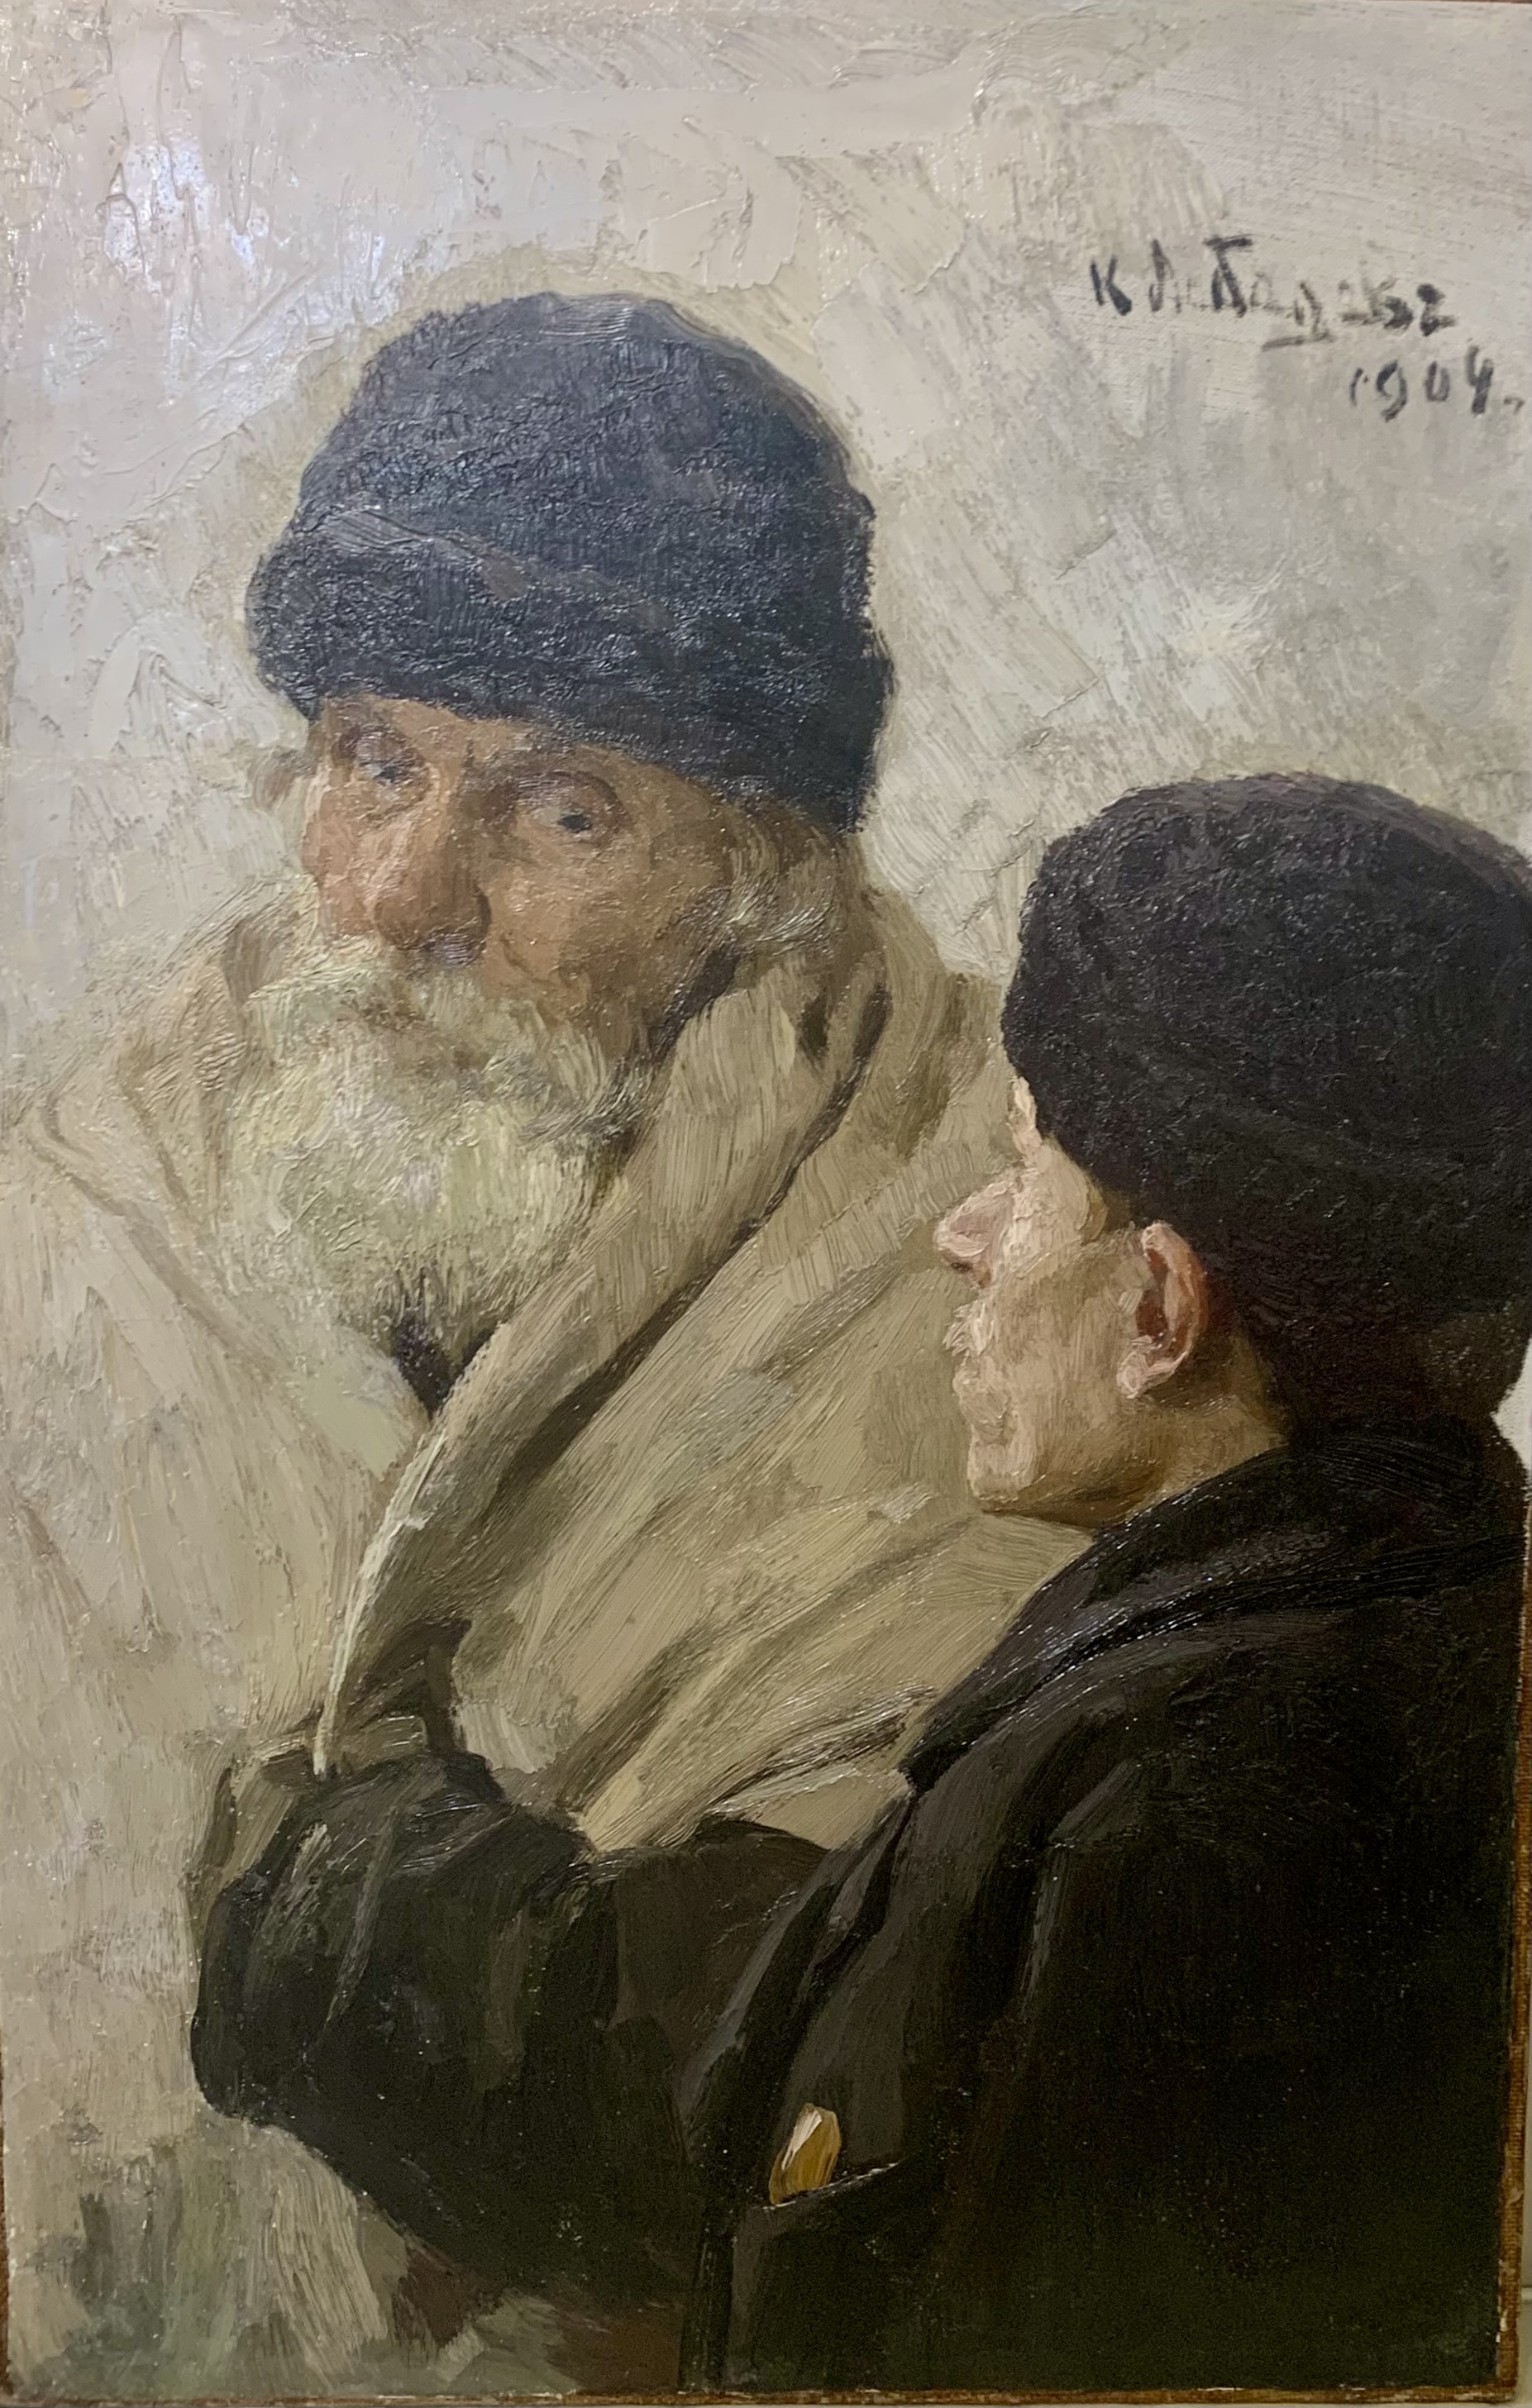 Лебедев К.В., Этюд к картине "Что-то случилось", 1904 г.